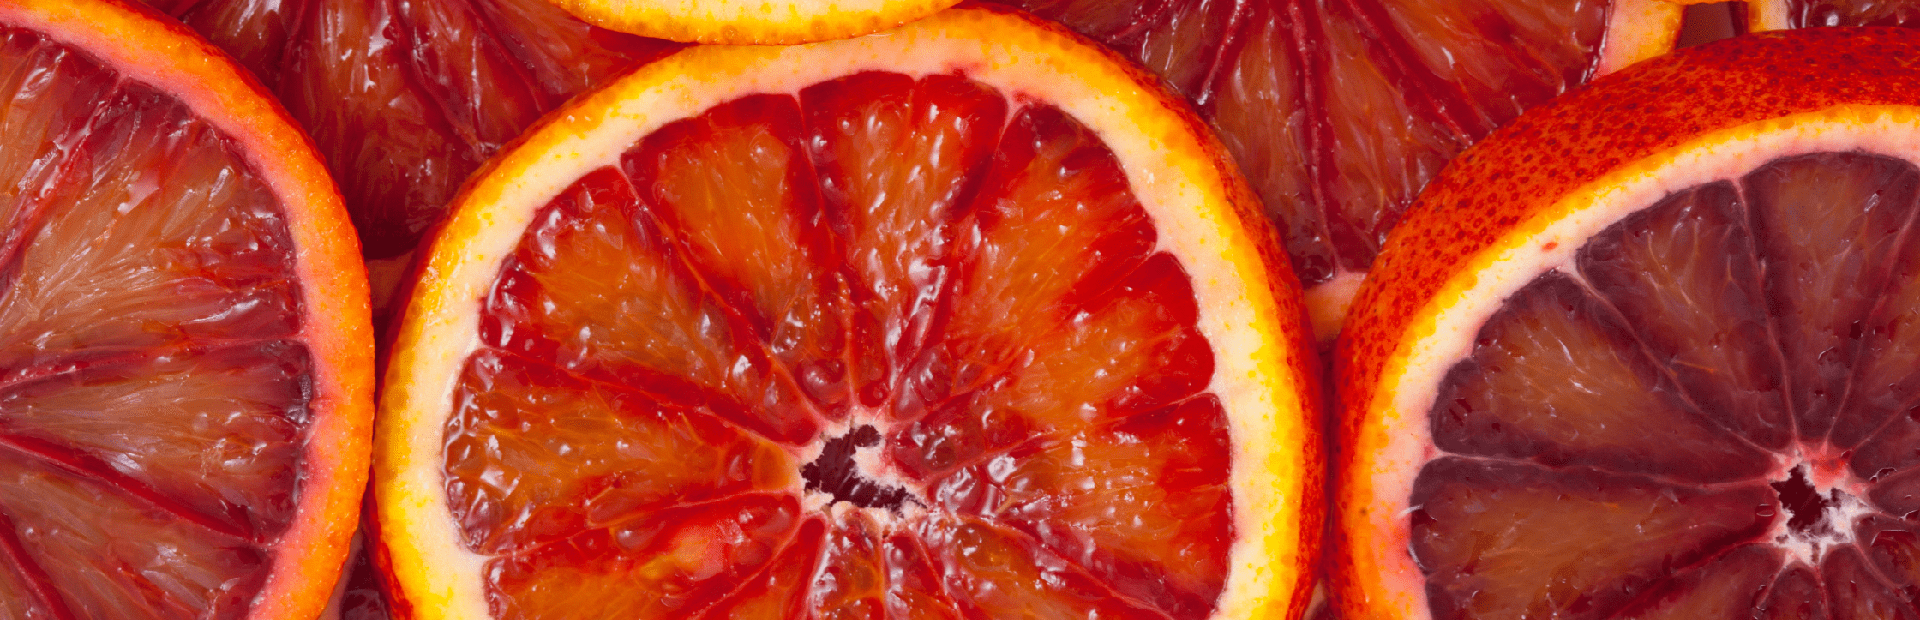 Morosil-e-emagrecimento-laranjas-vermelhas-sicilianas-peq